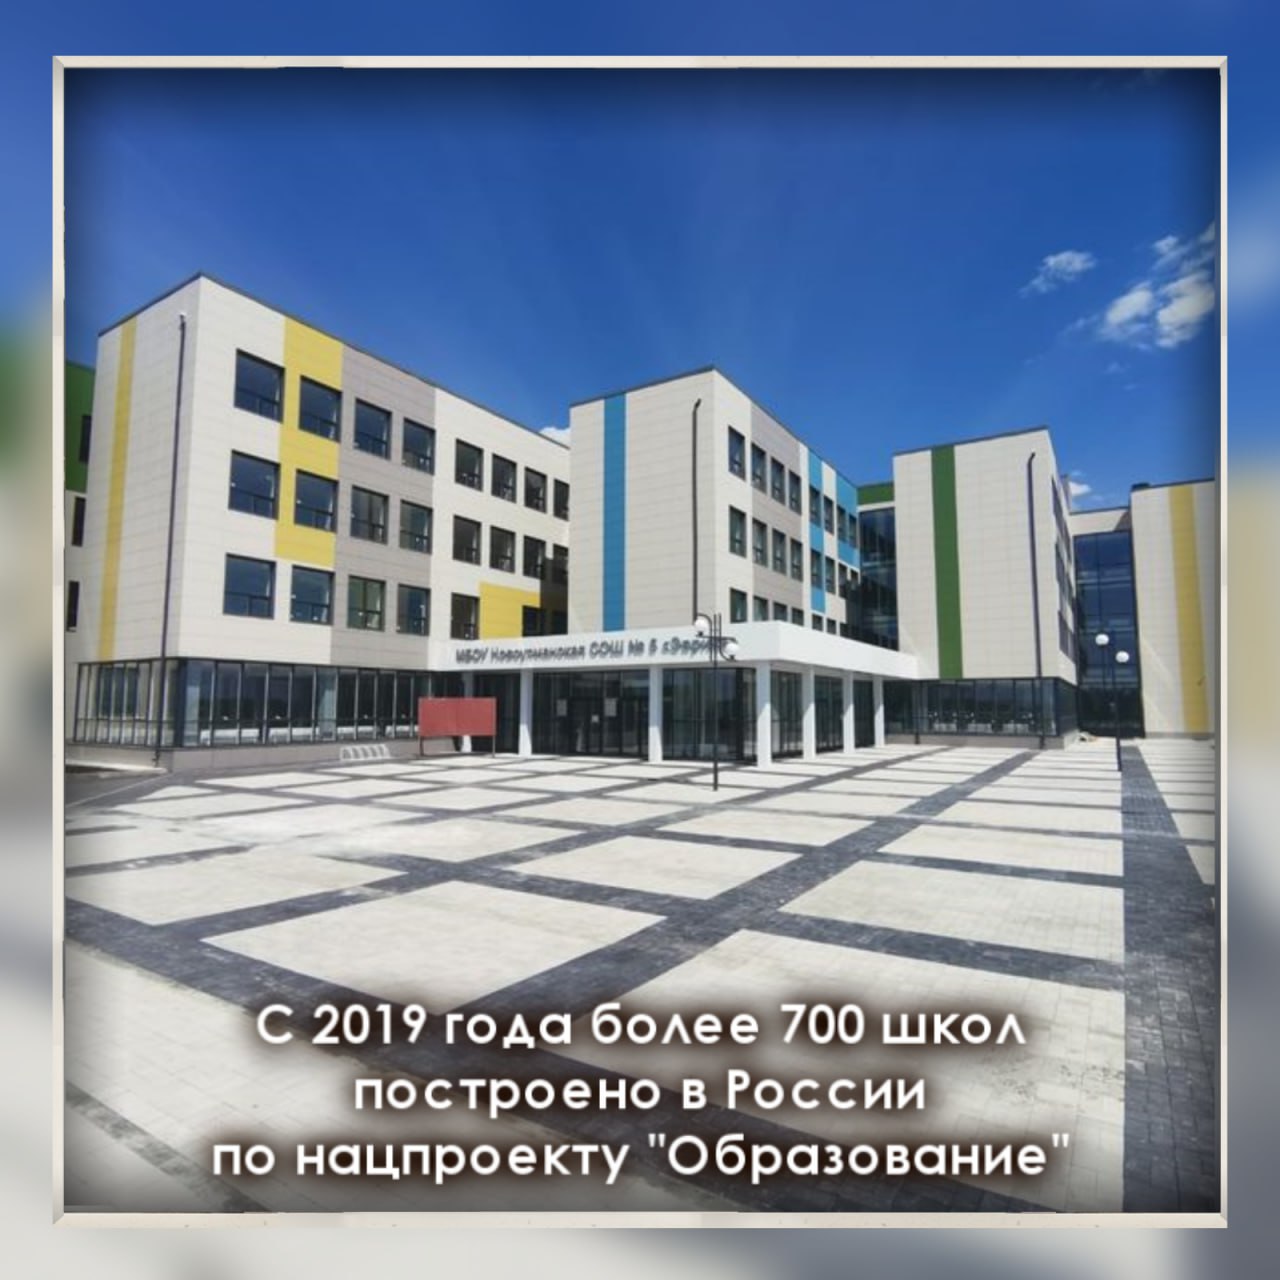 С 2019 года более 700 школ построено в России по нацпроекту &amp;quot;Образование&amp;quot;.